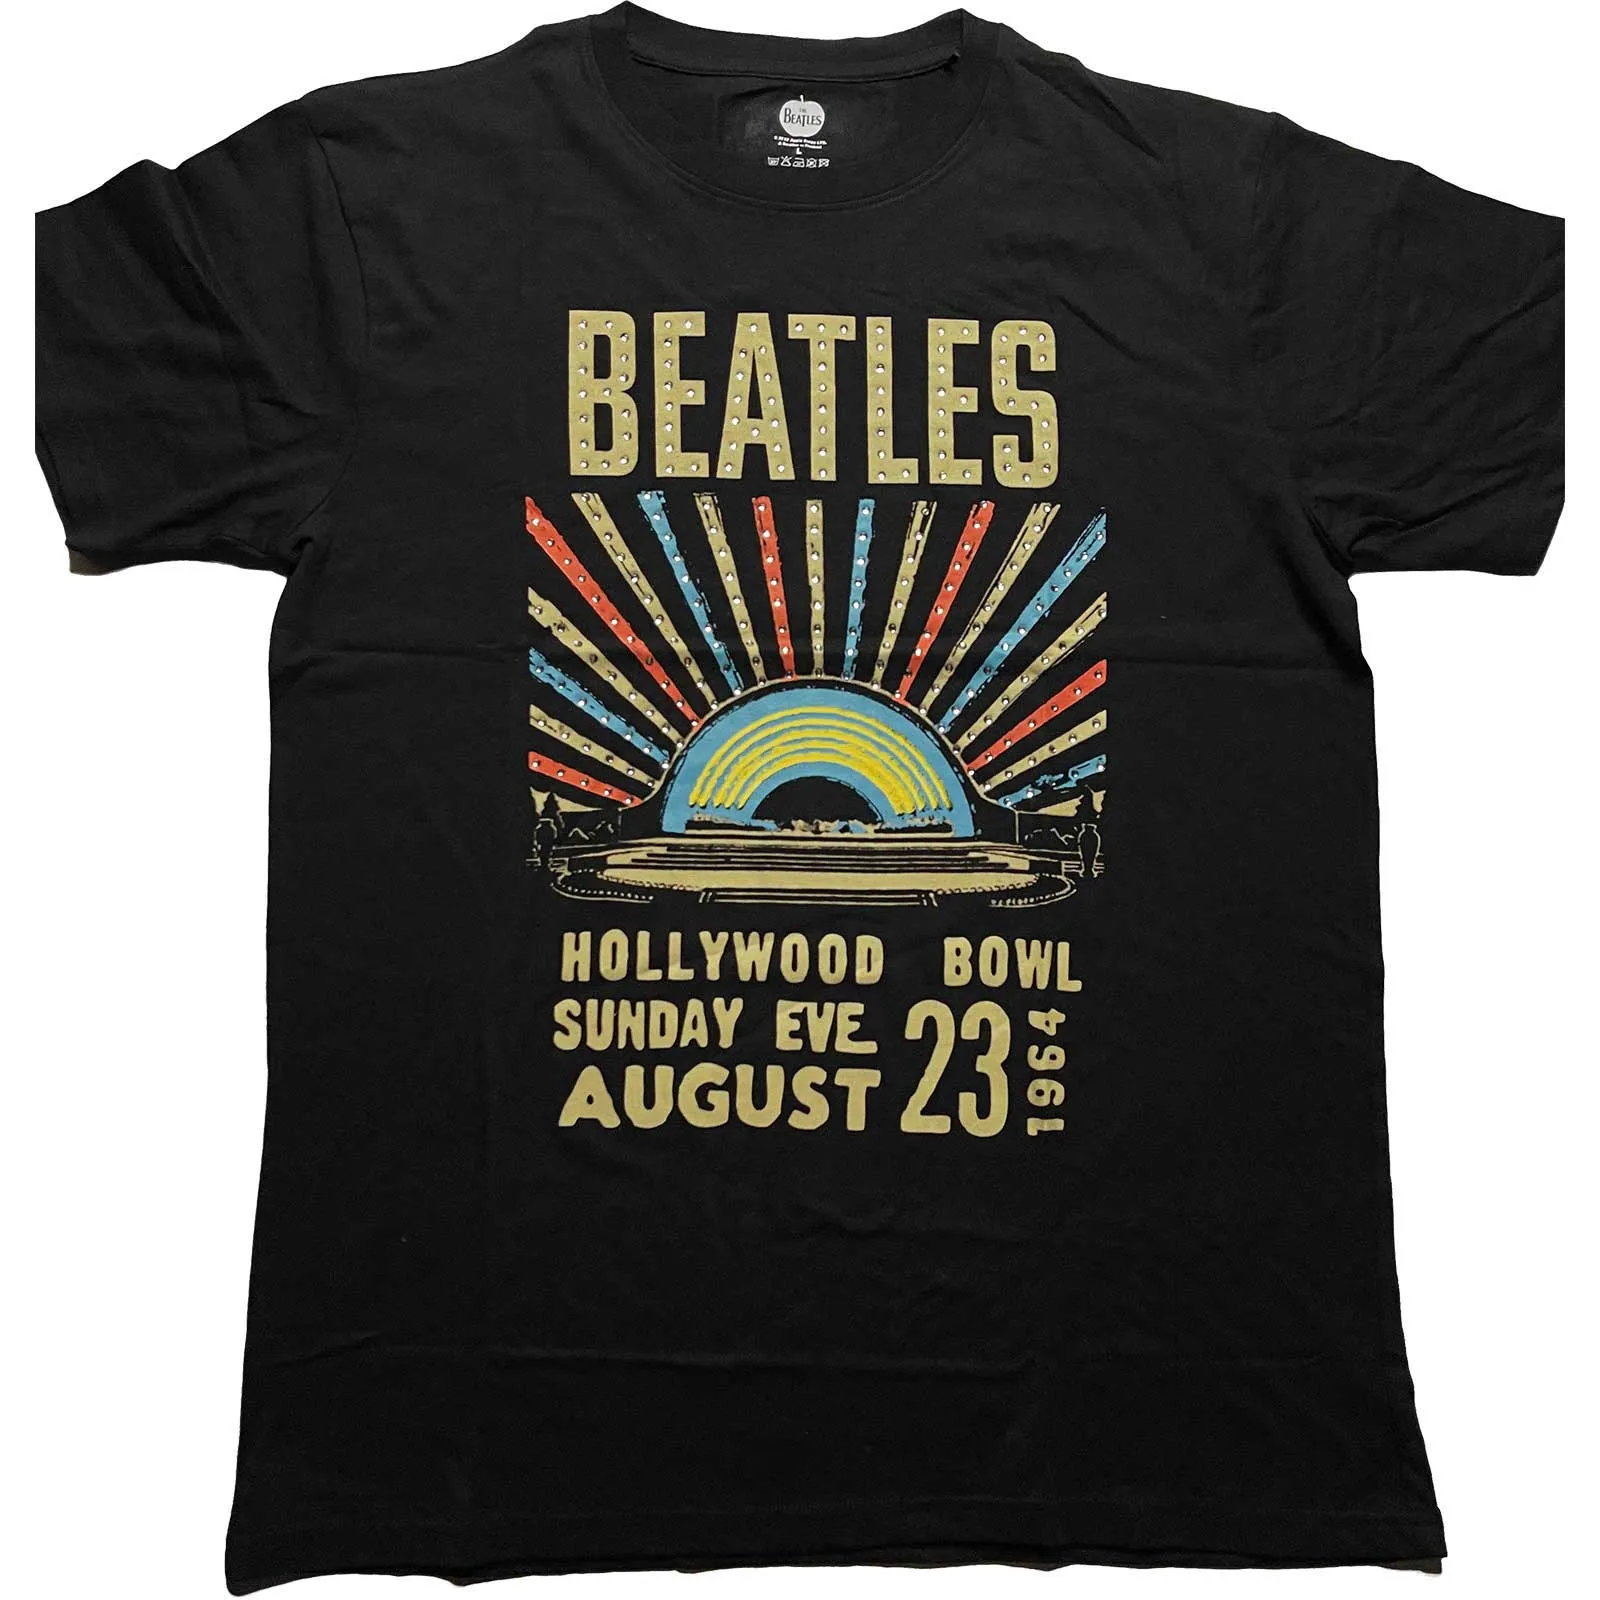 The Beatles - Unisex Embellished T-Shirt Hollywood Bowl Diamante, Embellished, Crystals, Rhinestones artwork